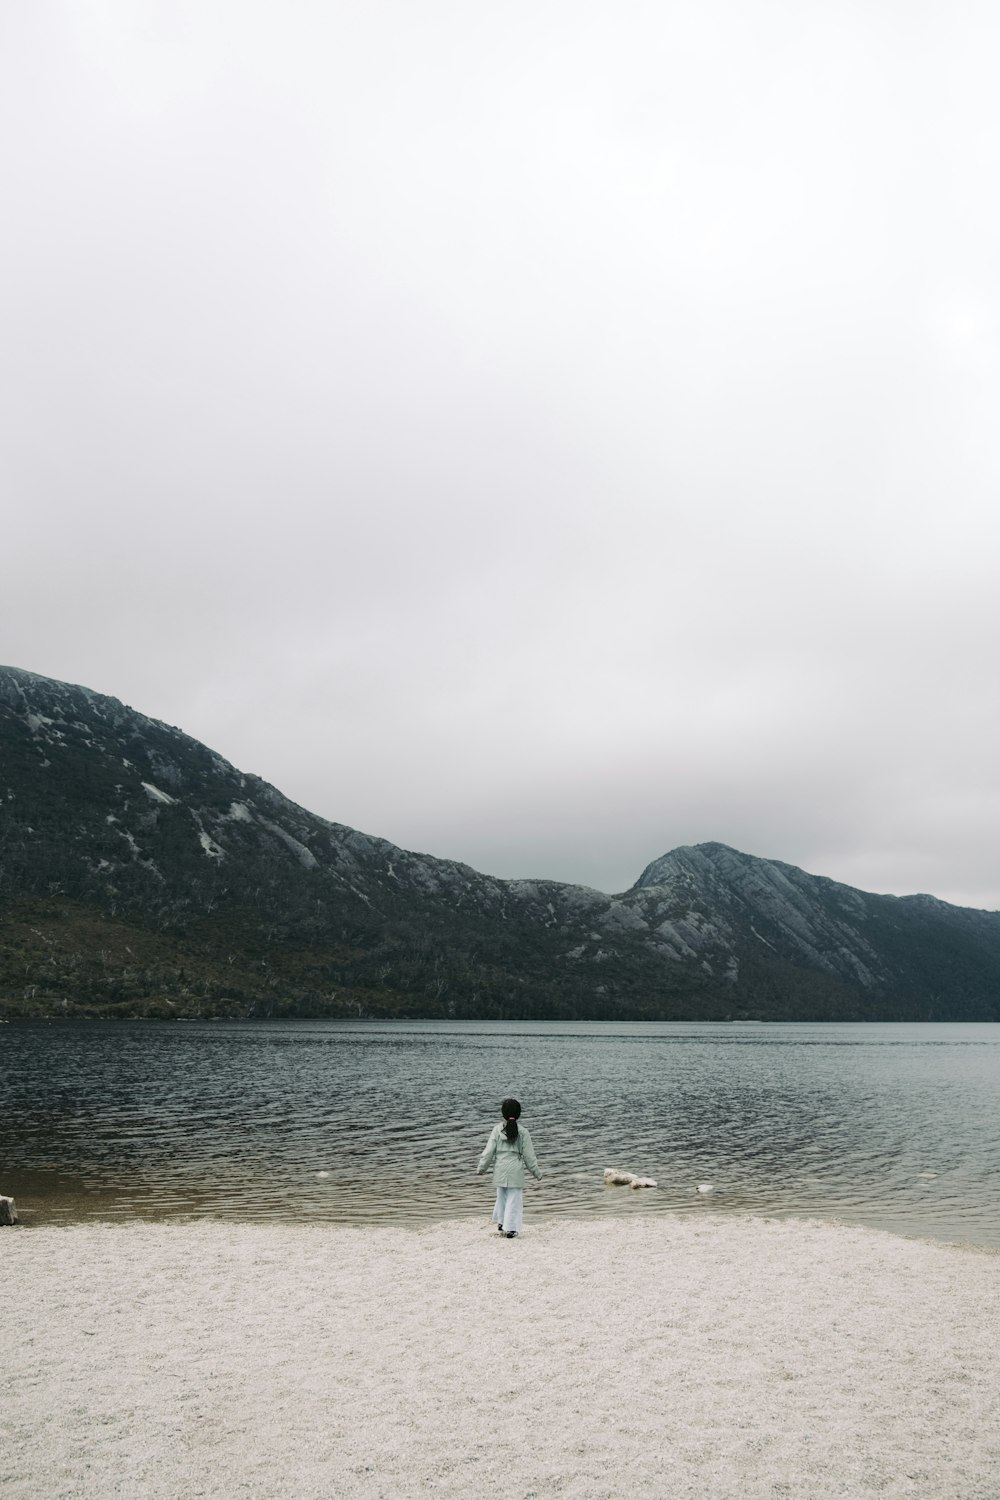 Una persona parada en una playa cerca de un cuerpo de agua